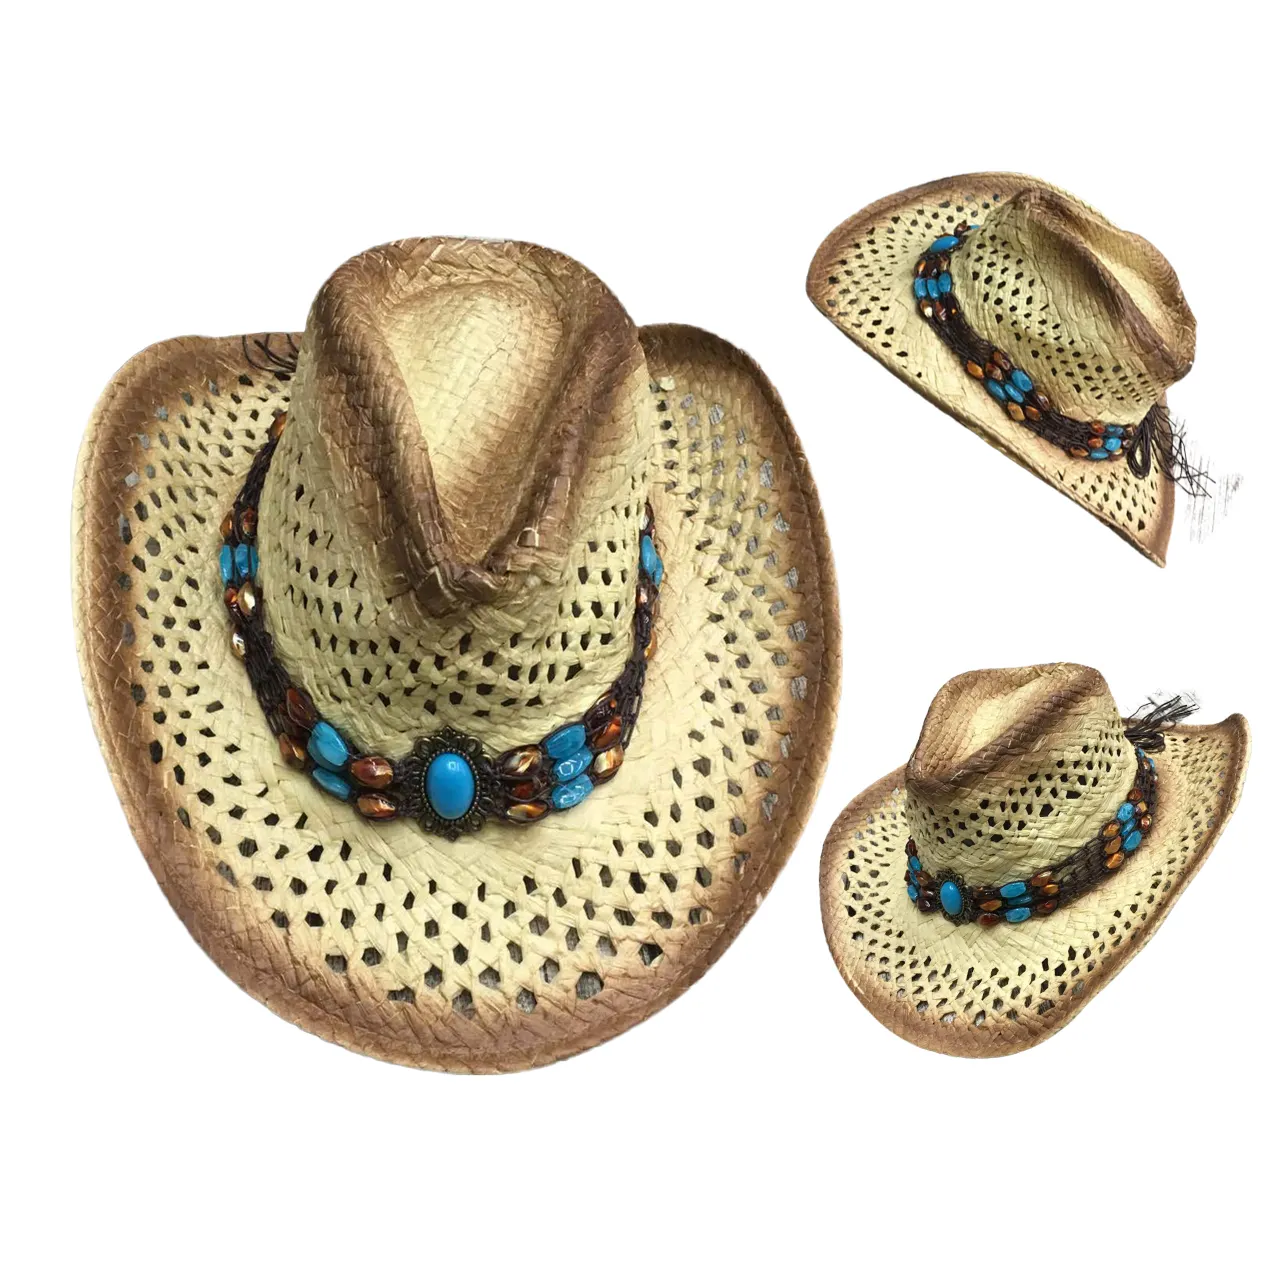 Handmade Raffia Rơm Cowboy Hat Mexico Sombreros Carbon Hóa Rỗng Bãi Biển Mùa Hè Sun Cao Bồi Mũ